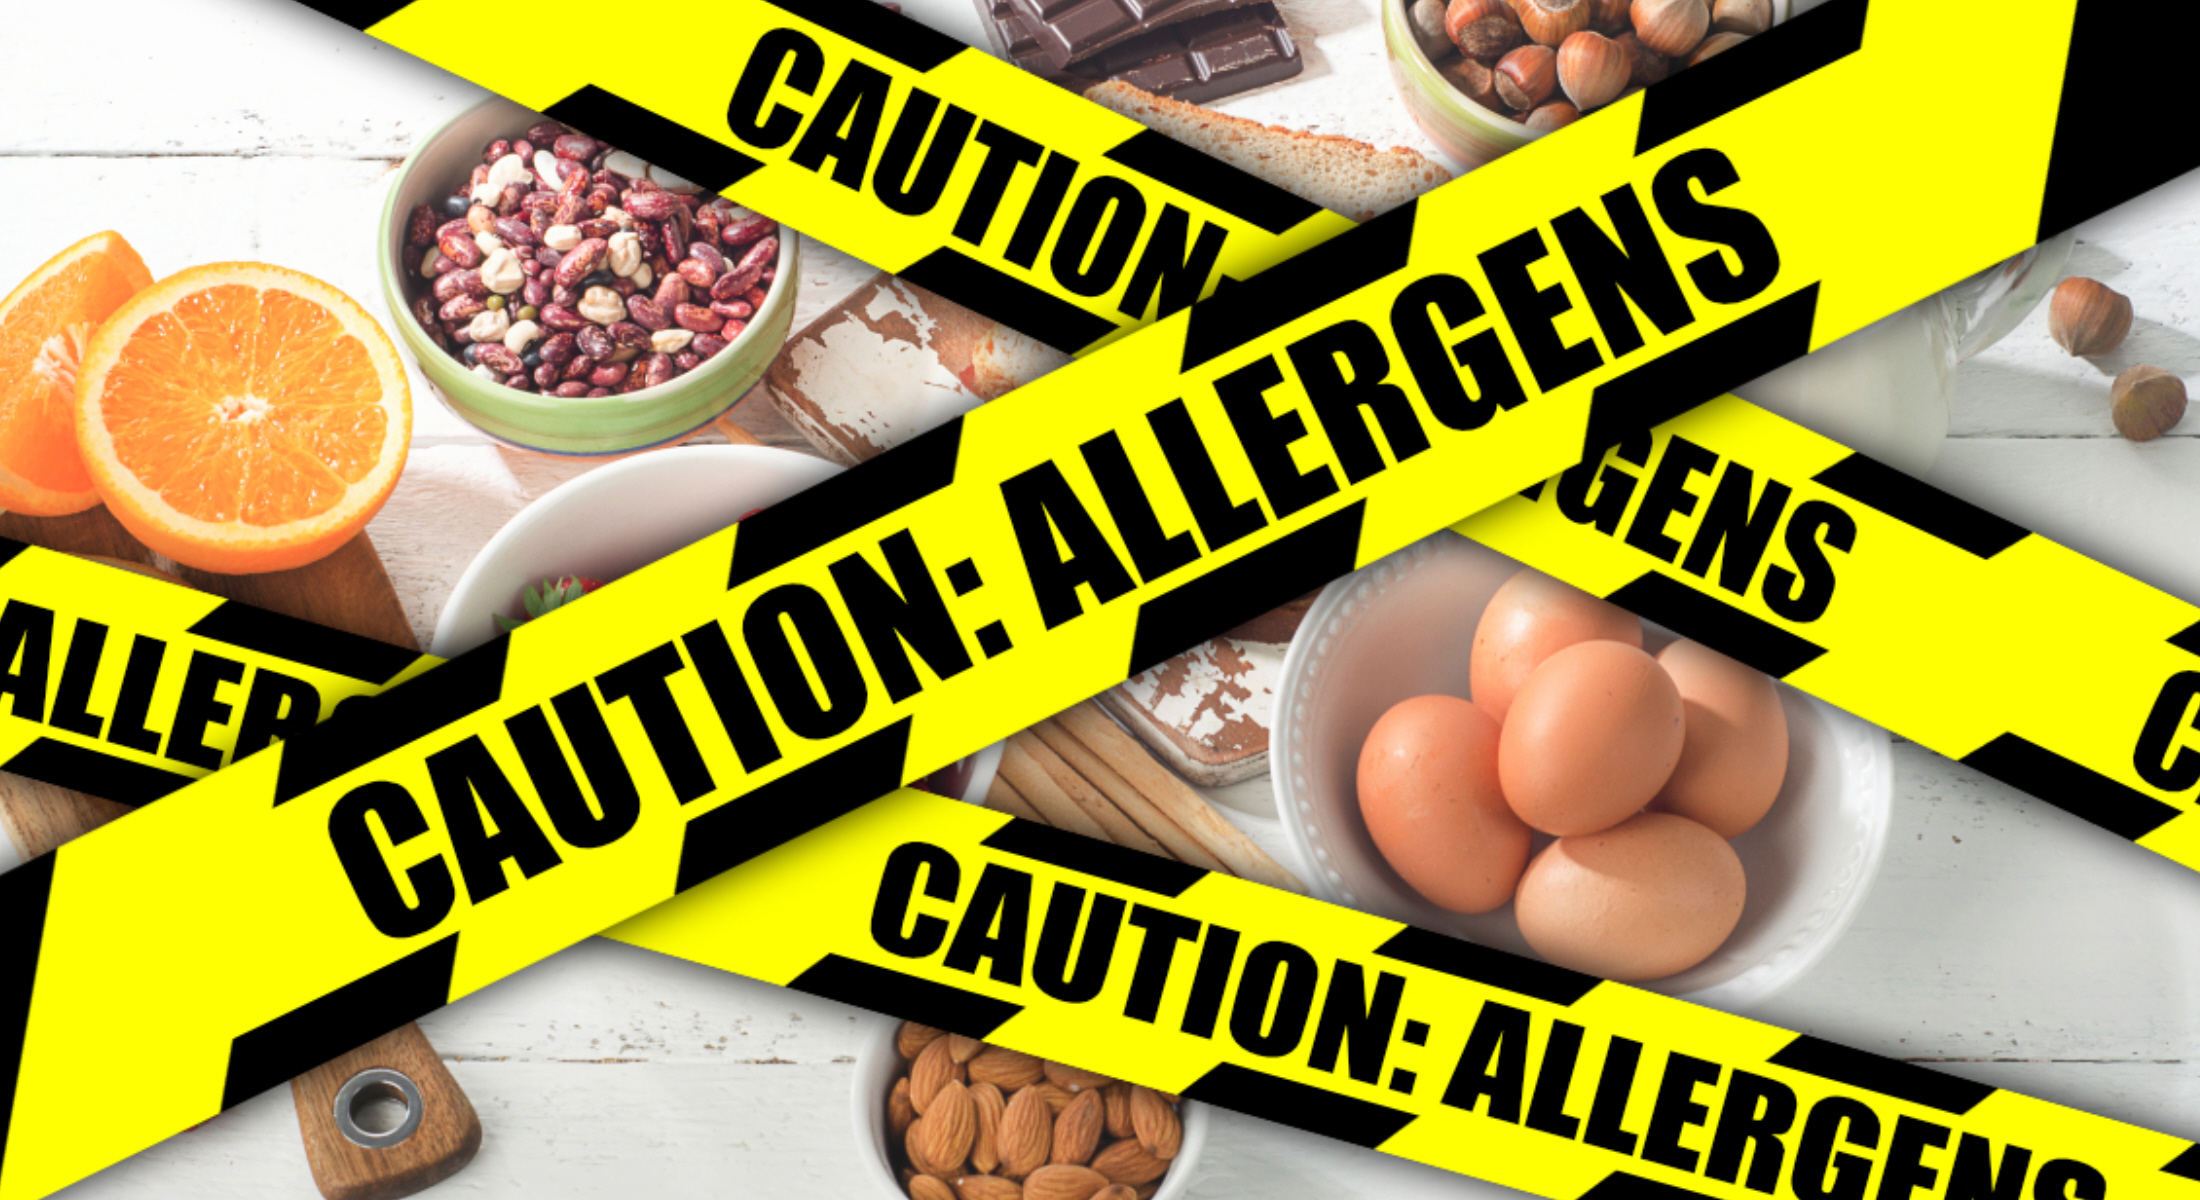 Αυτές είναι οι πιο συχνές τροφικές αλλεργίες που πρέπει να προσέχετε